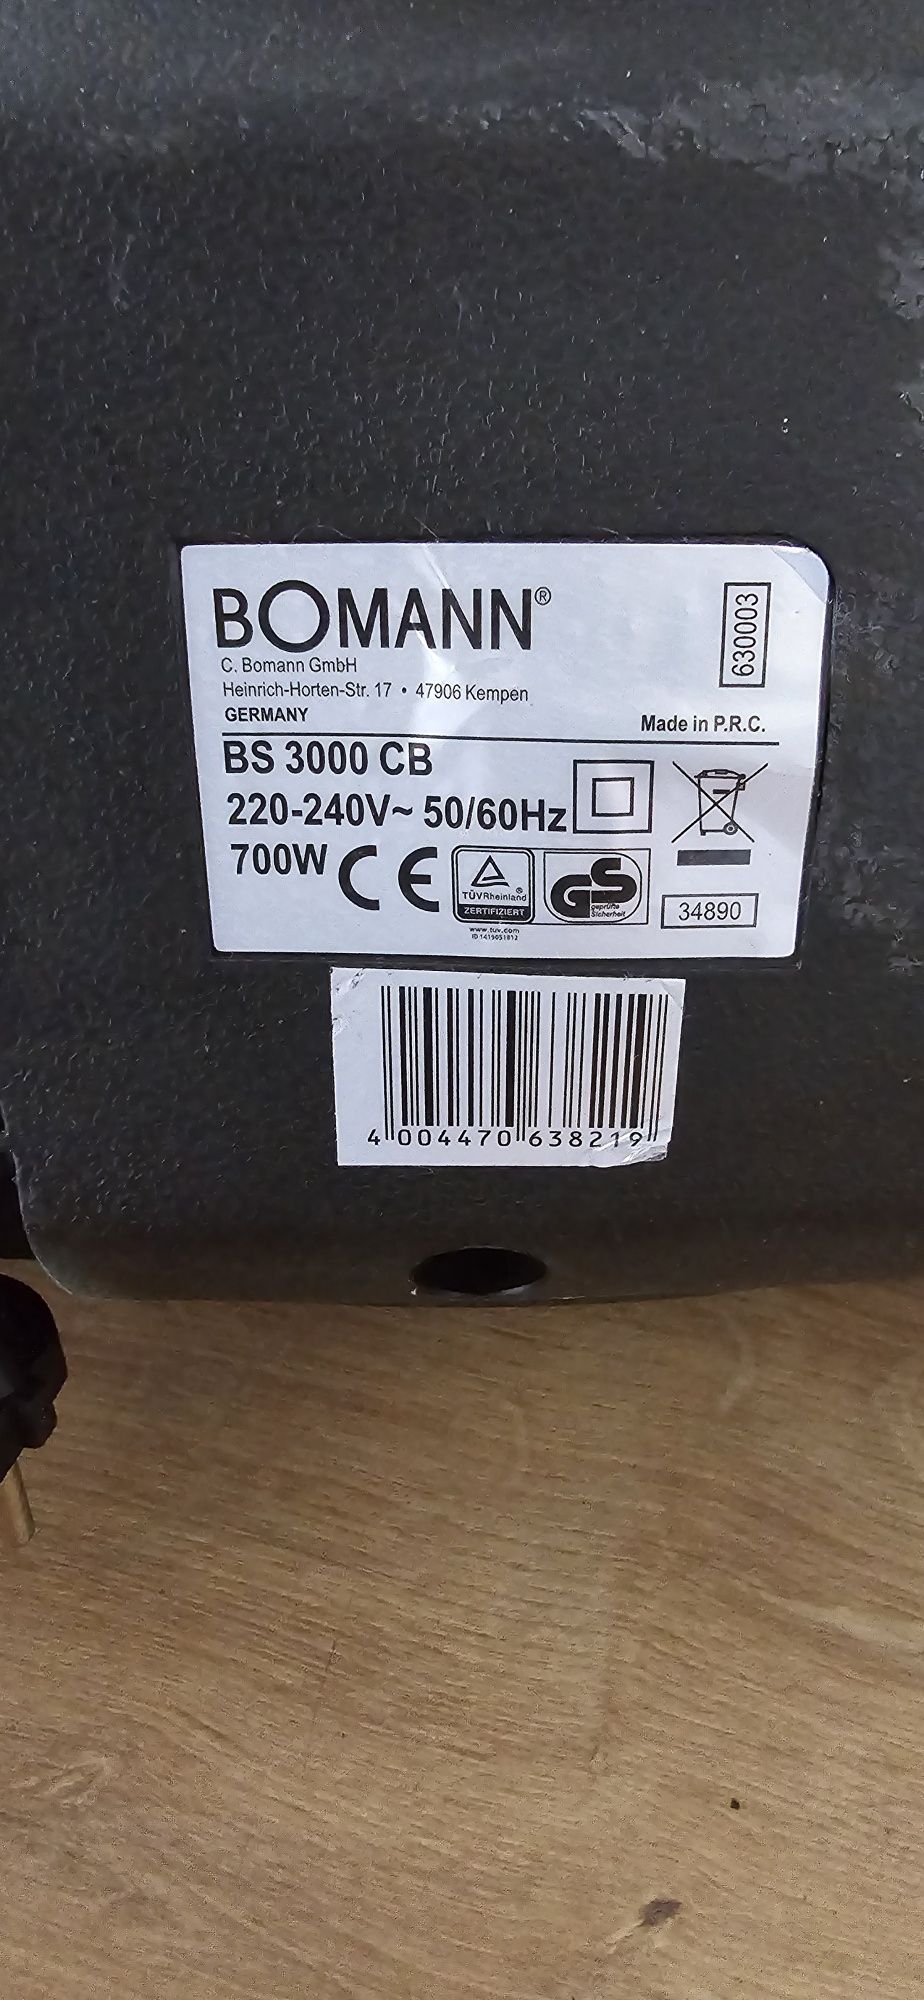 Mały mocny bezworkowy odkurzacz BOMANN BS 3000 CB o mocy 700W.